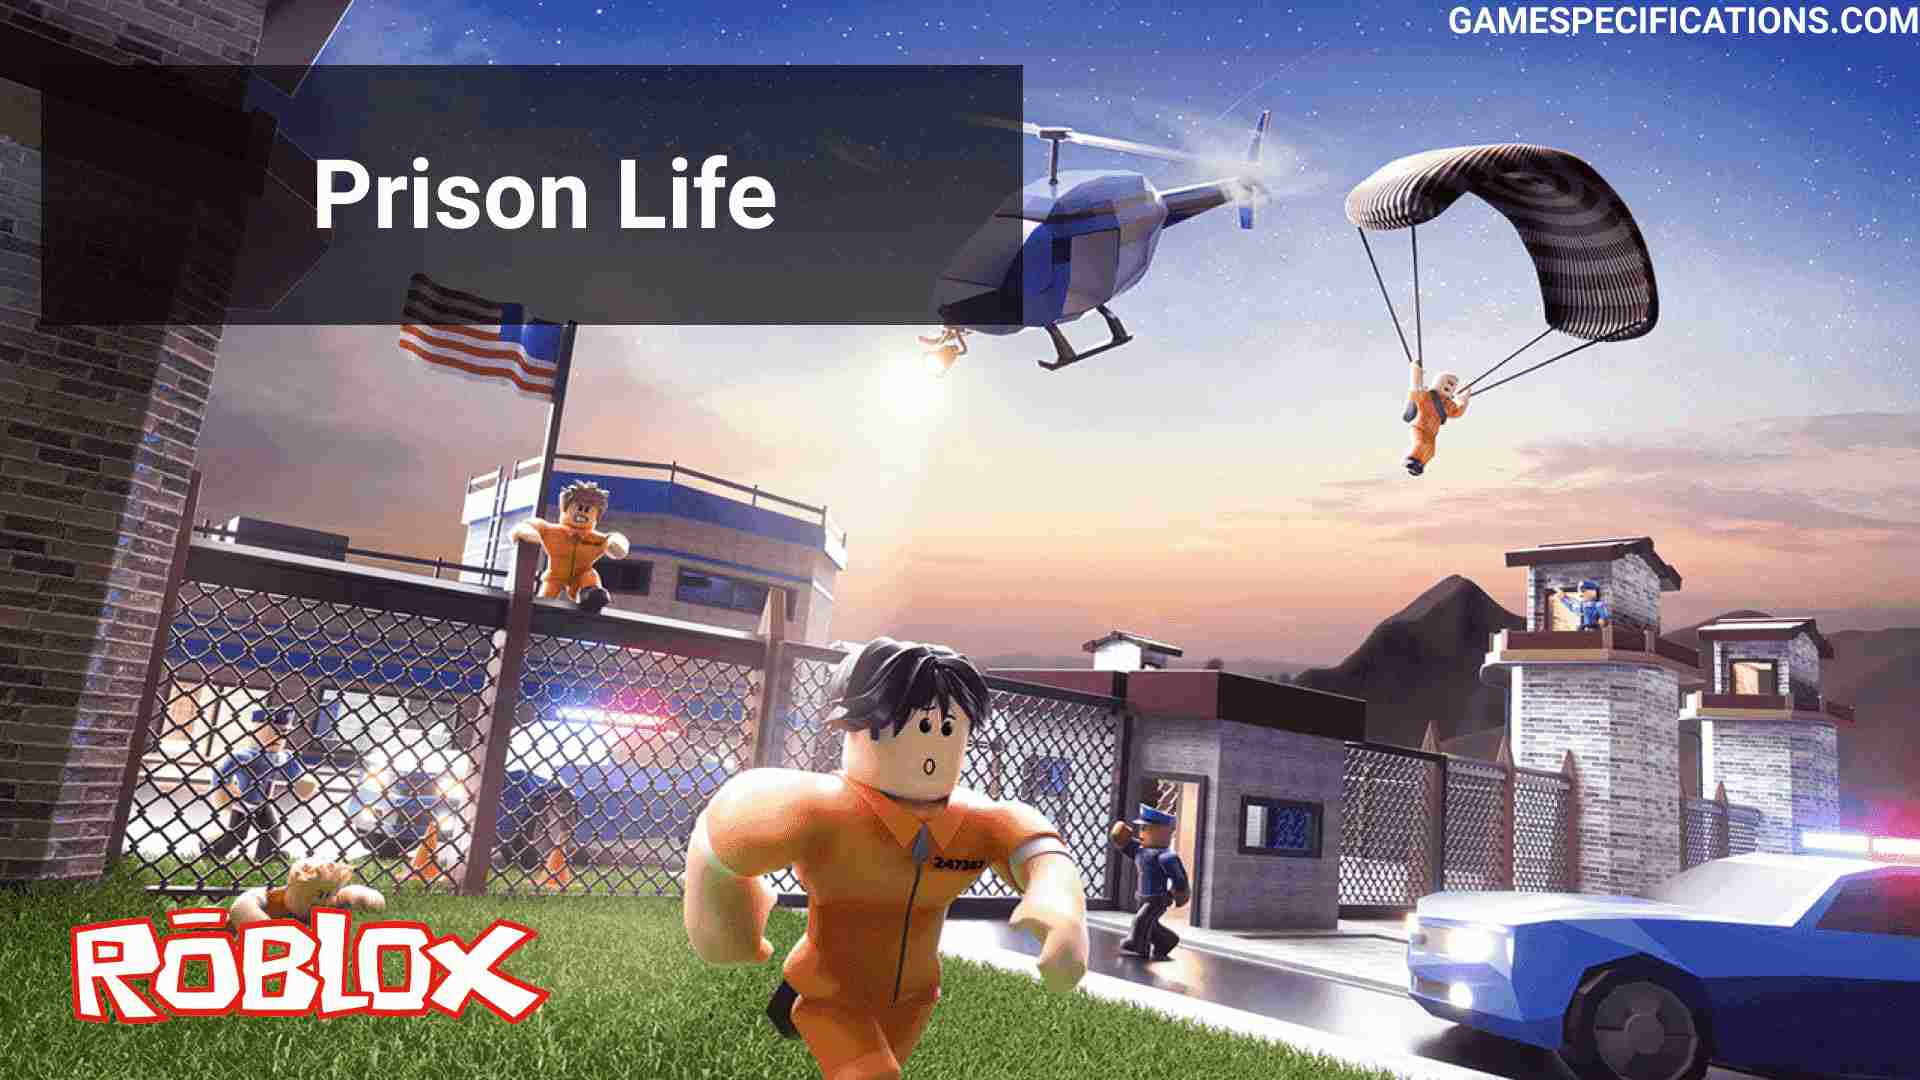 Roblox Prison Life A Complete Guide To Escape Prison 2021 Game Specifications - escape roblox prison